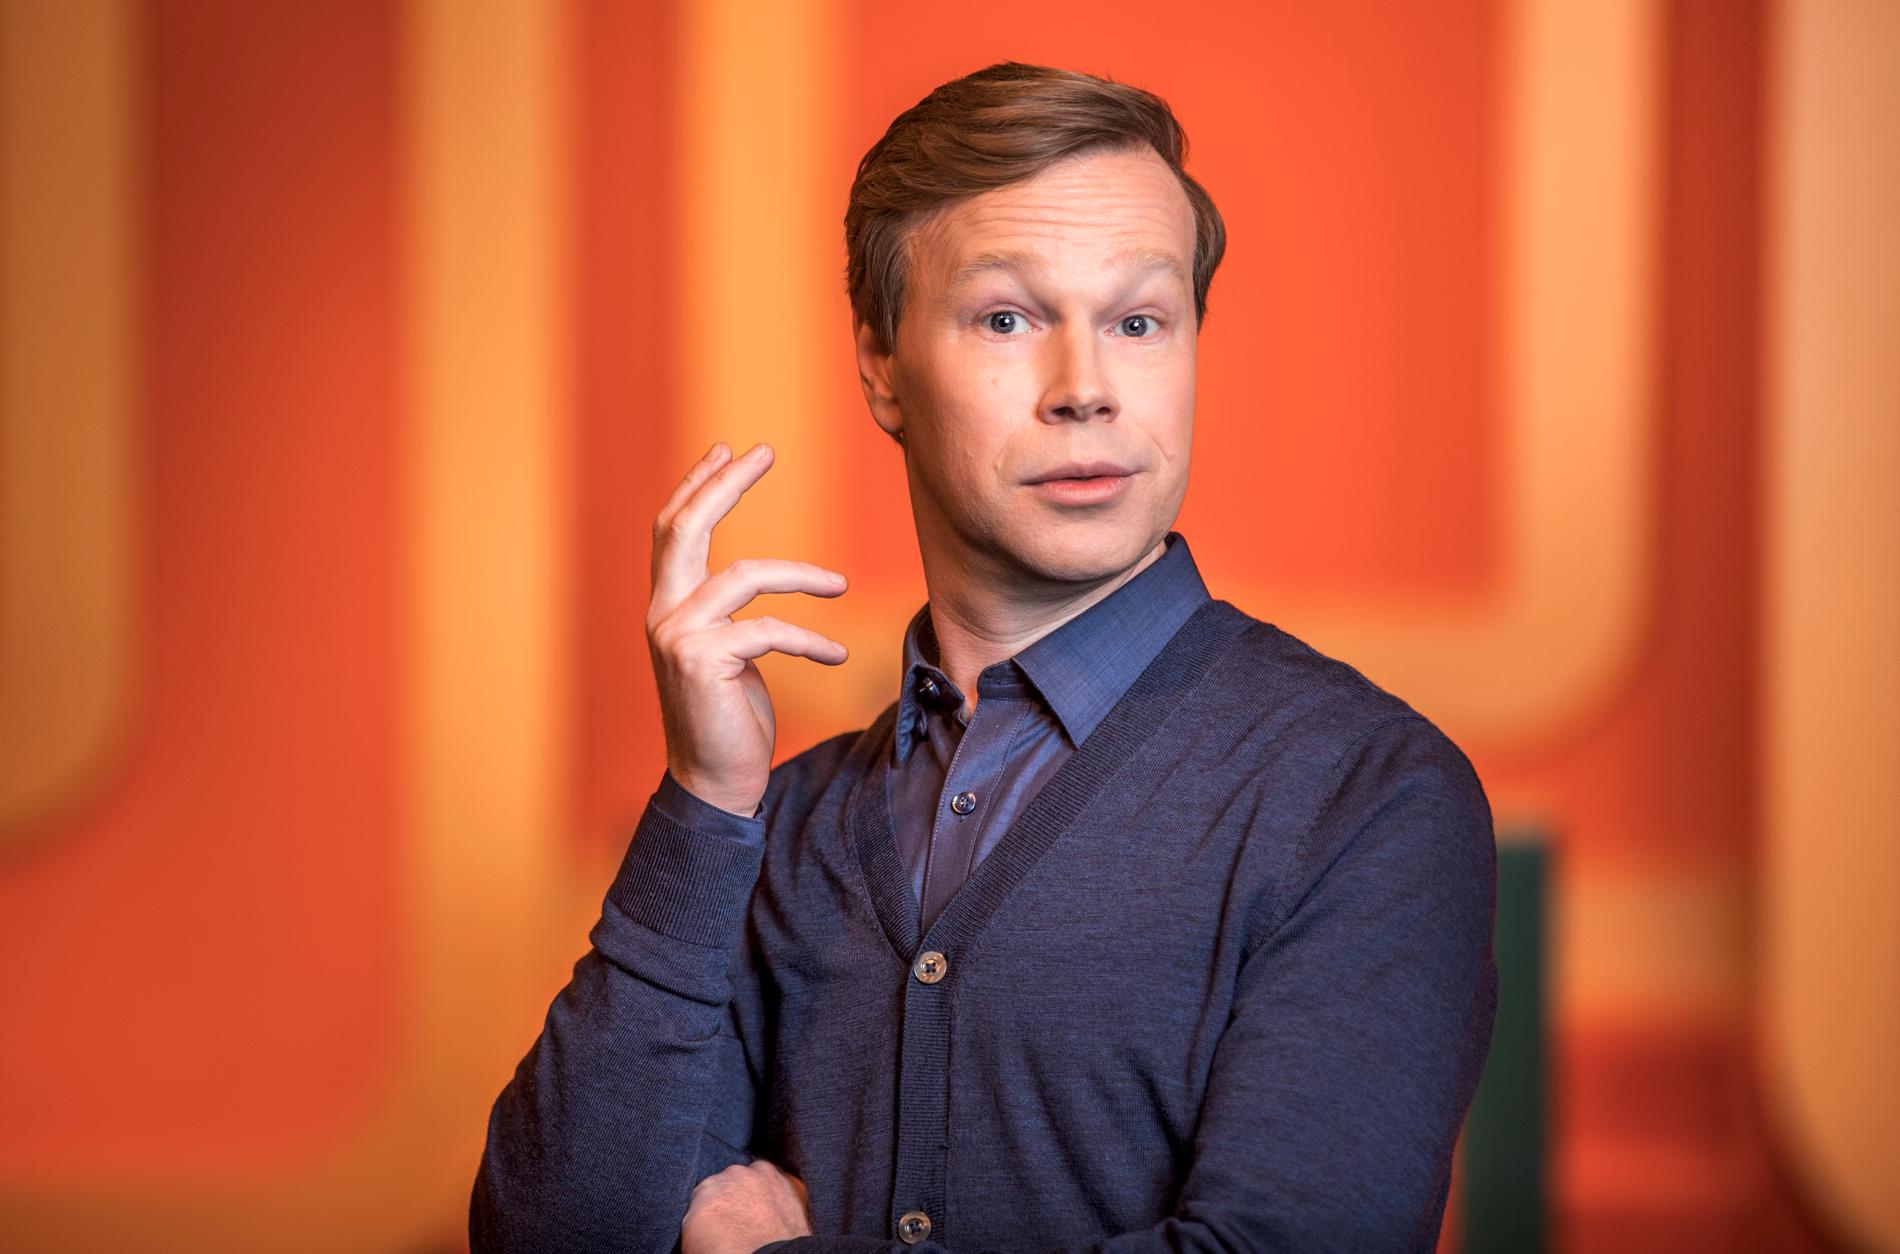 TV4 tvingas betala 200 000 kronor för störande reklamavbrott i sändningen av Johan Glans scenshow. Pressbild.